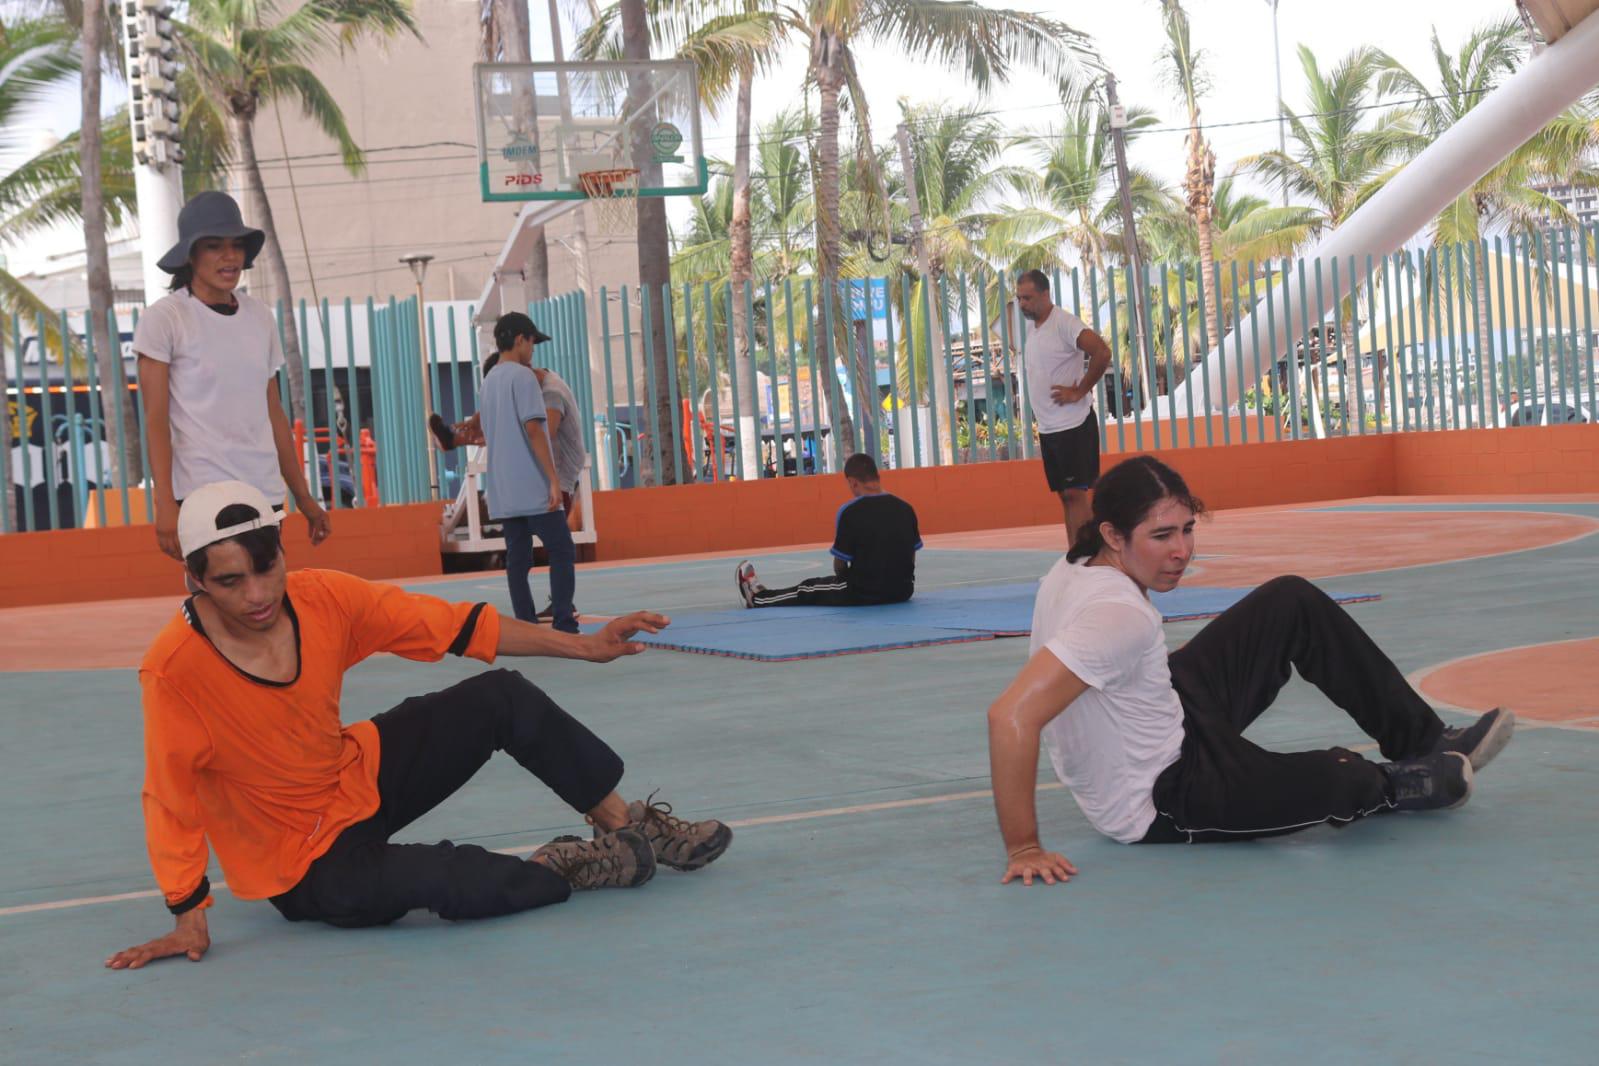 $!Abren escuela gratuita de breaking en Mazatlán, una mezcla de juventud, frescura y dinamismo